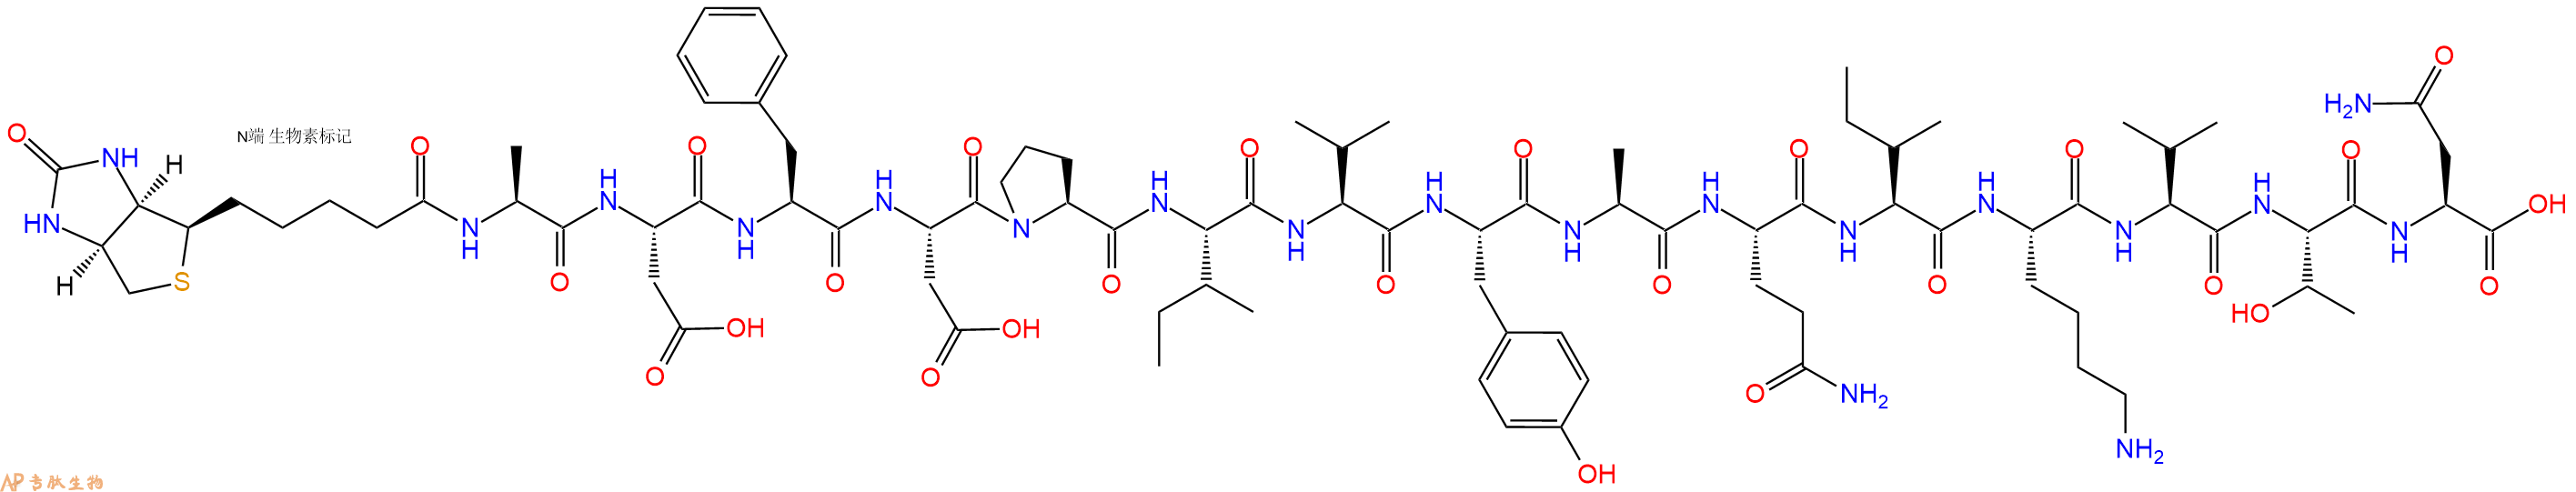 专肽生物产品生物素标记肽Biotin-ADFDPIVYAQIKVTN